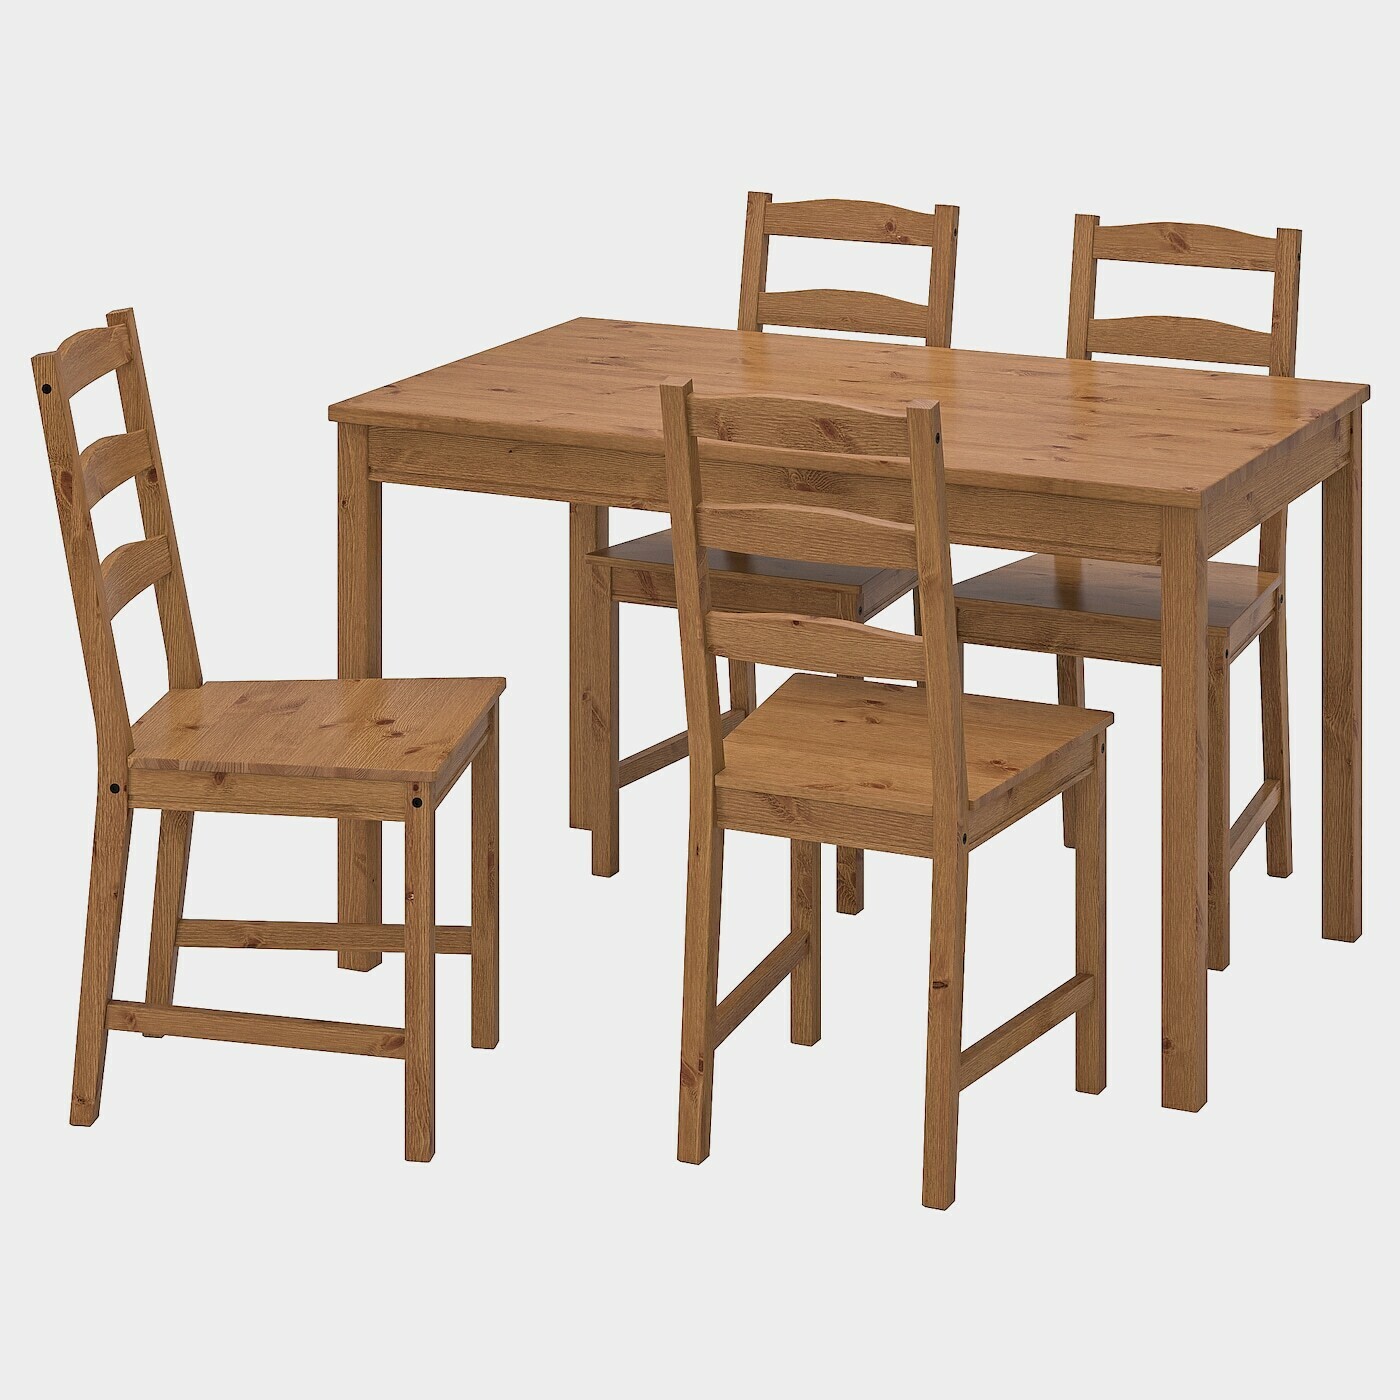 JOKKMOKK Tisch und 4 Stühle  - Essplatzgruppe - Möbel Ideen für dein Zuhause von Home Trends. Möbel Trends von Social Media Influencer für dein Skandi Zuhause.